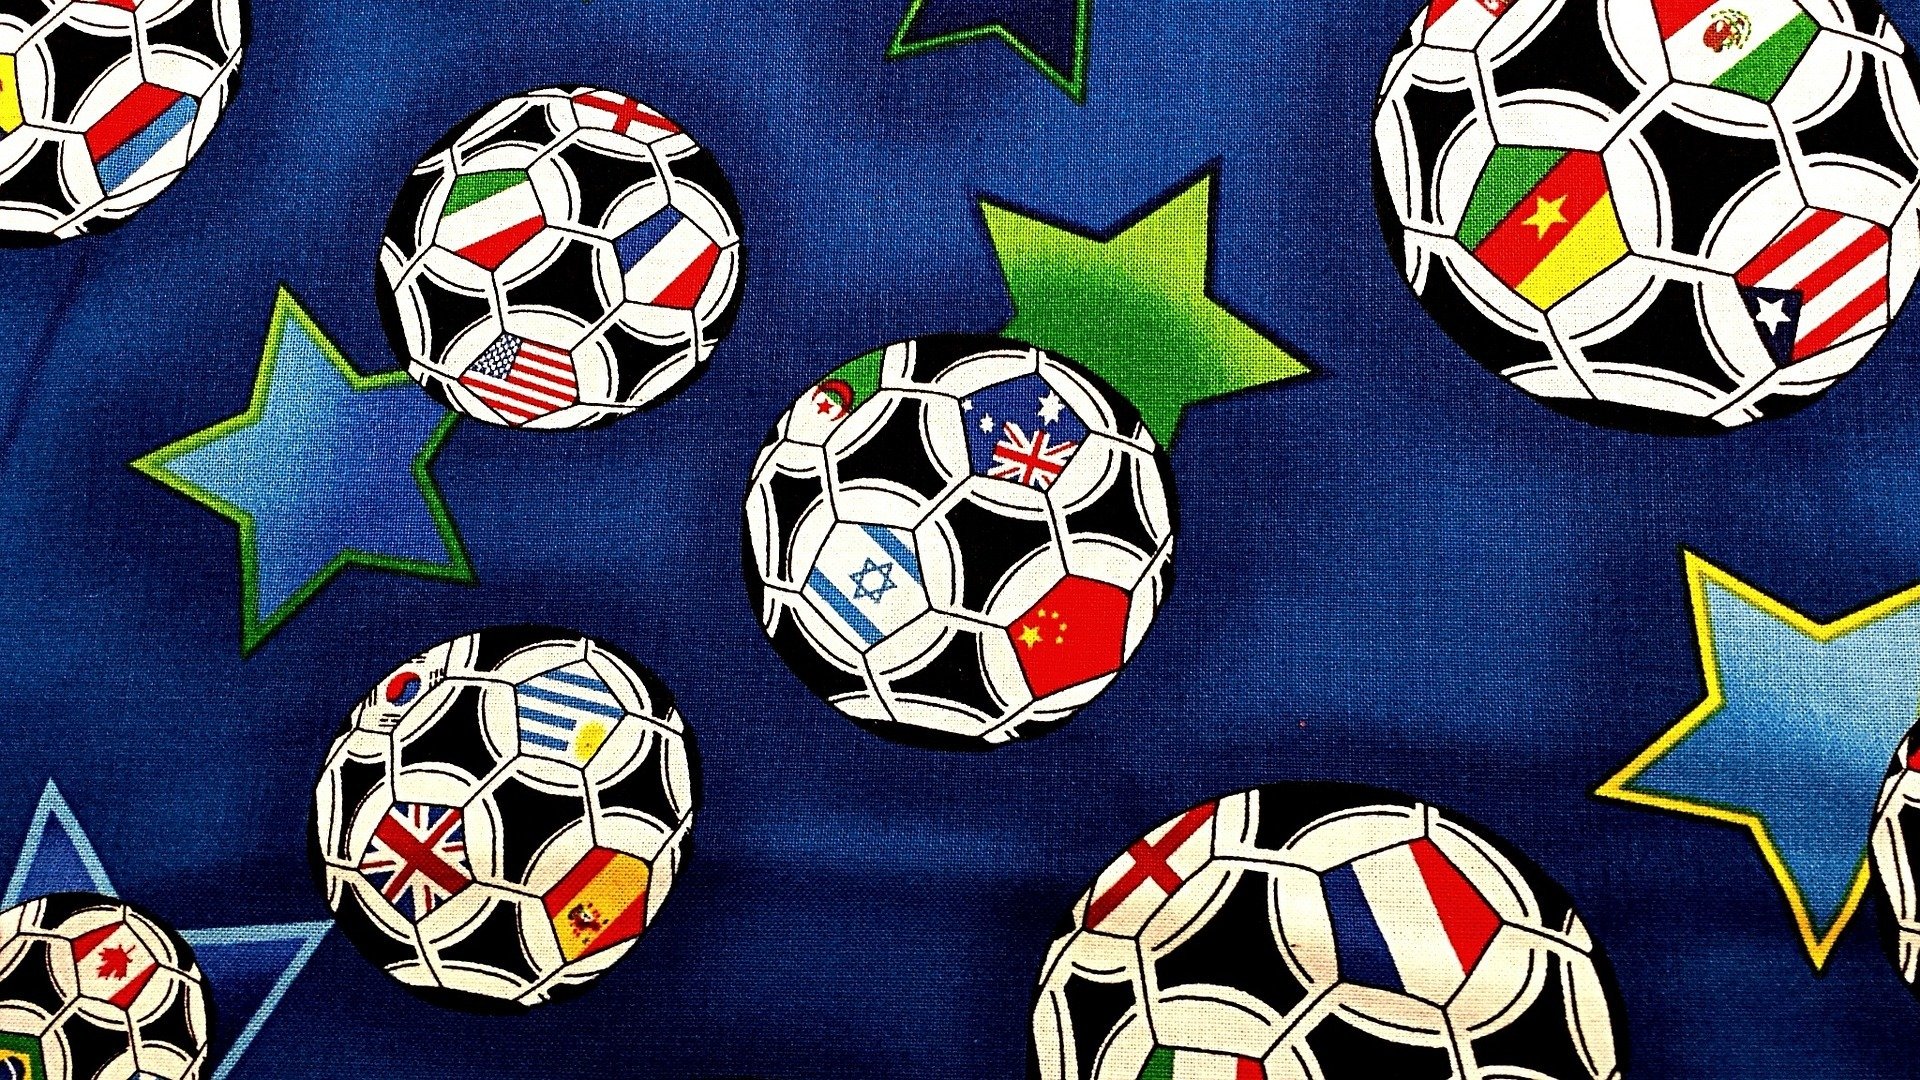 Em cada continente, há uma seleção que predomina na Copa do Mundo. Saiba qual é a melhor seleção de cada continente no Mundial da FIFA.